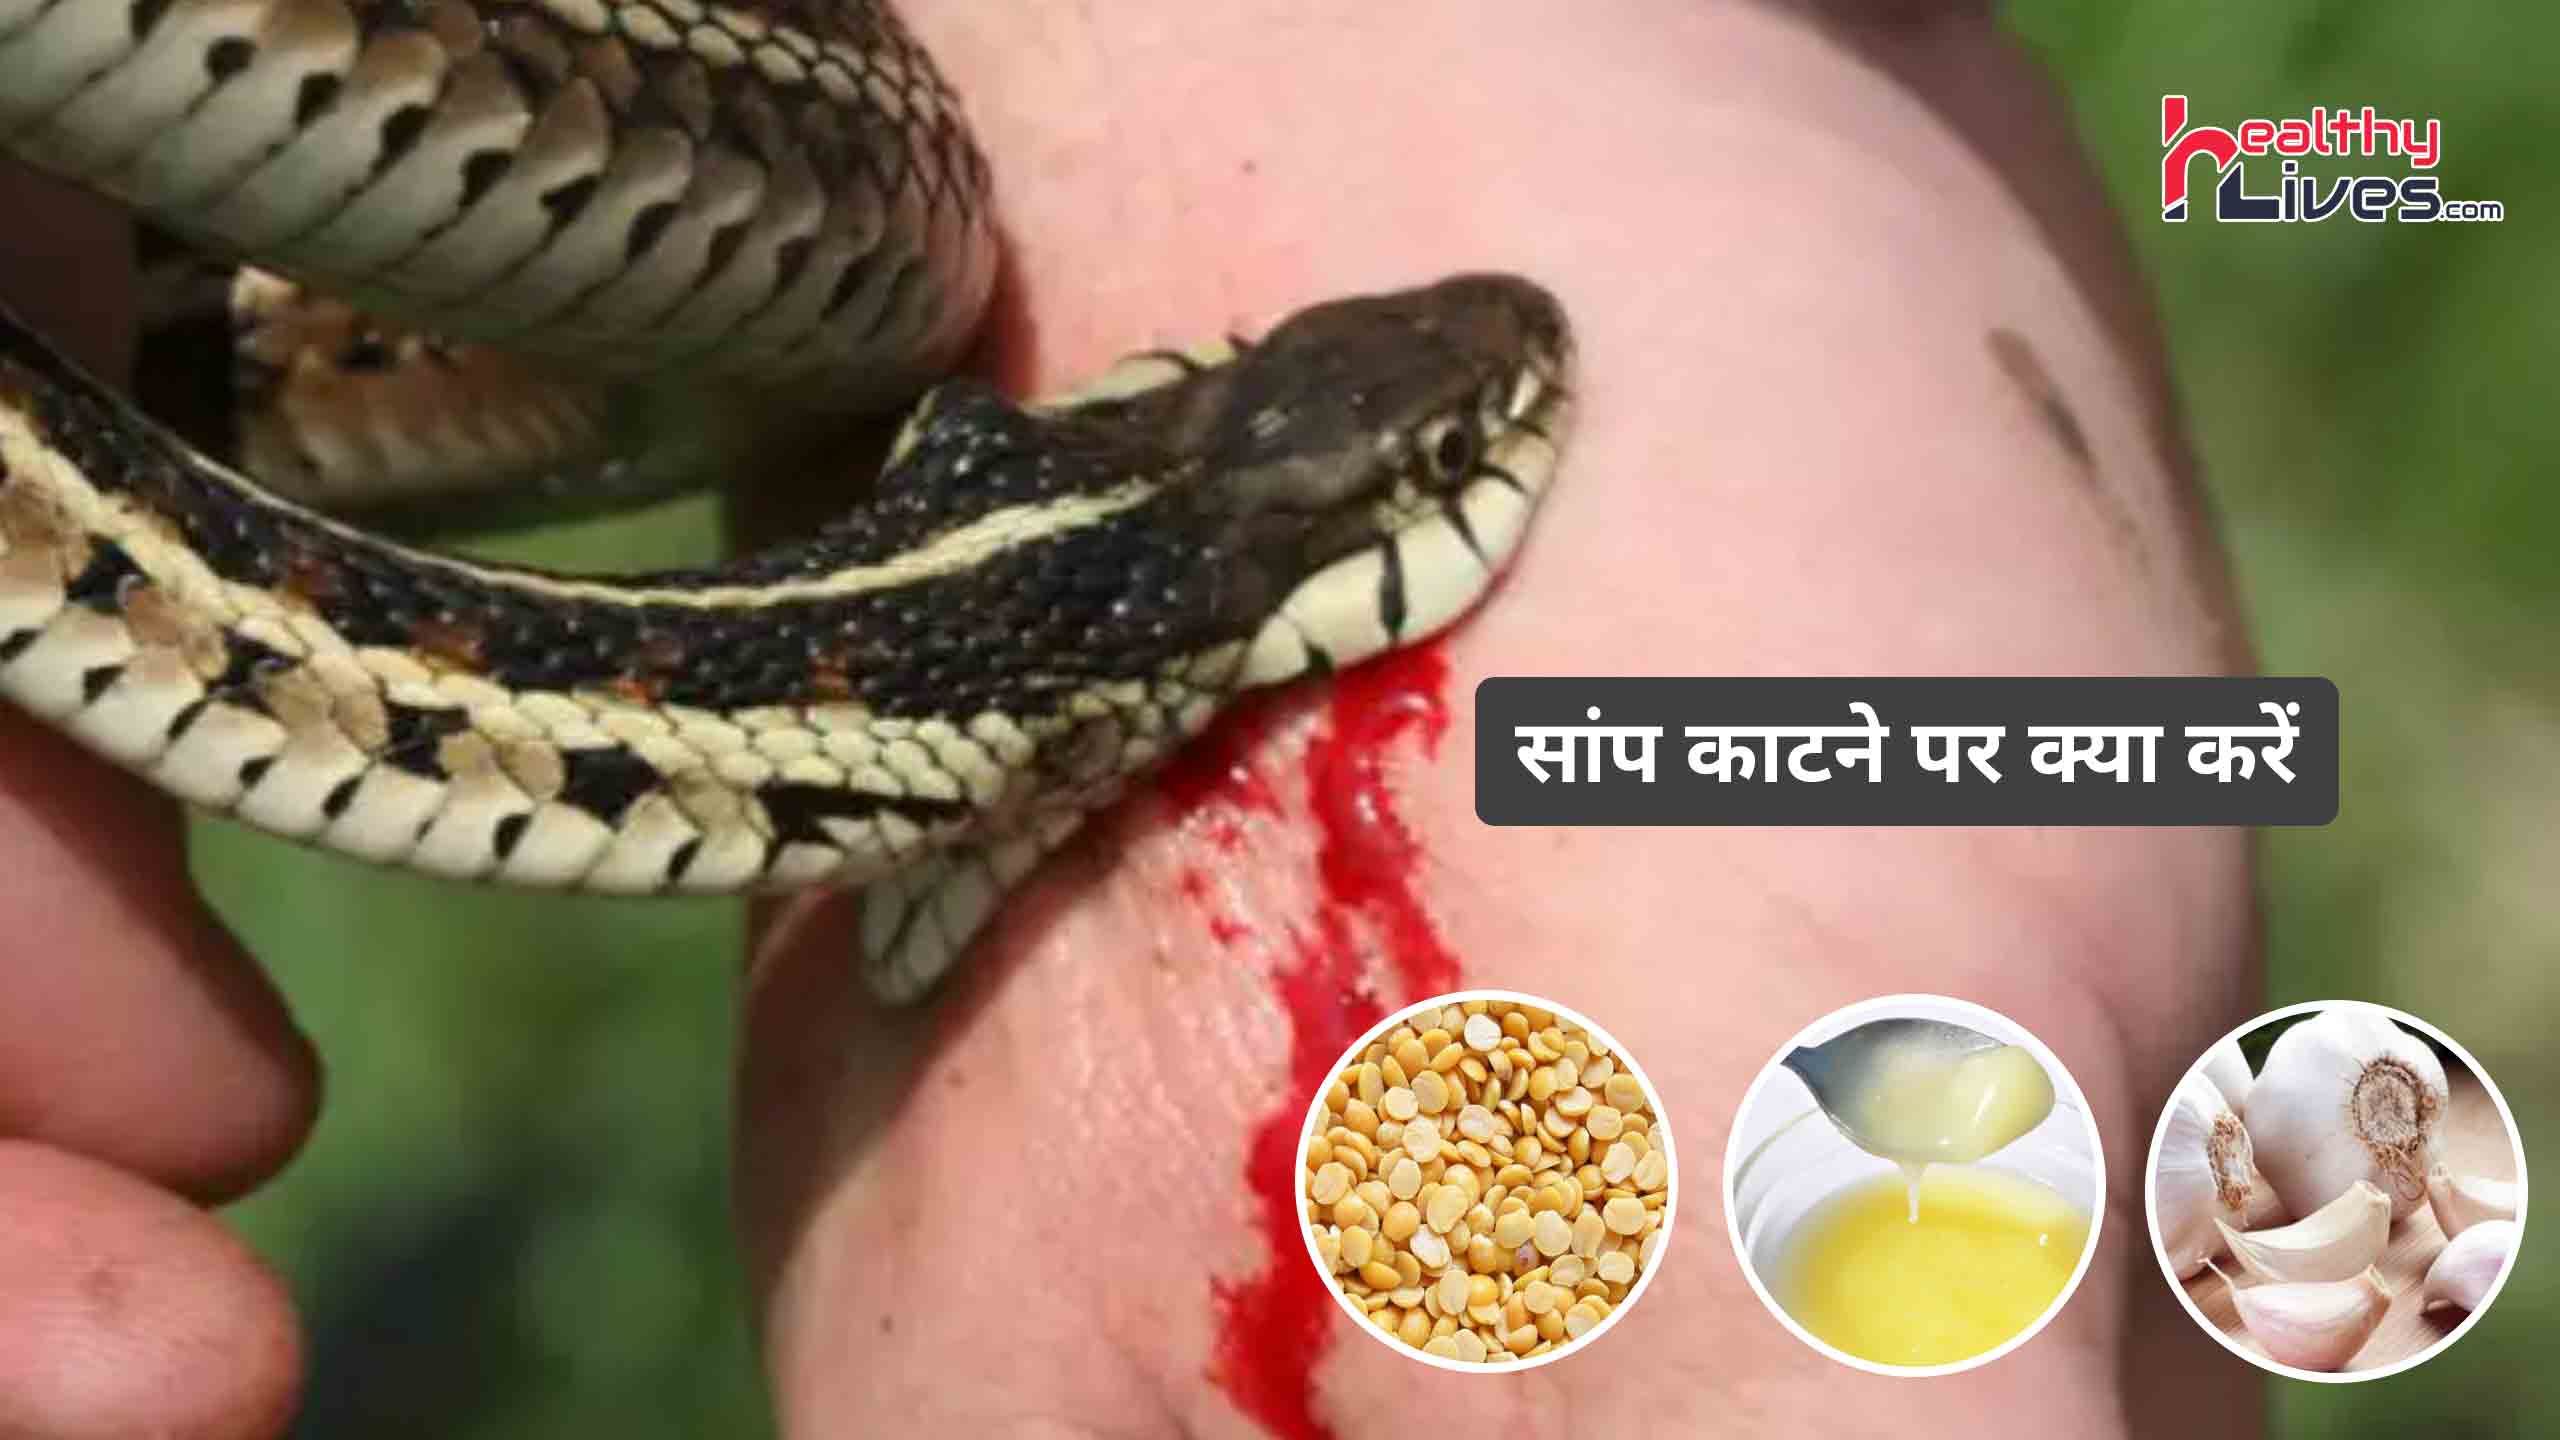 Snake Bite Treatment in Hindi: सांप काटने पर न करें पैनिक, सूझबूझ से करवाएं अपना उपचार